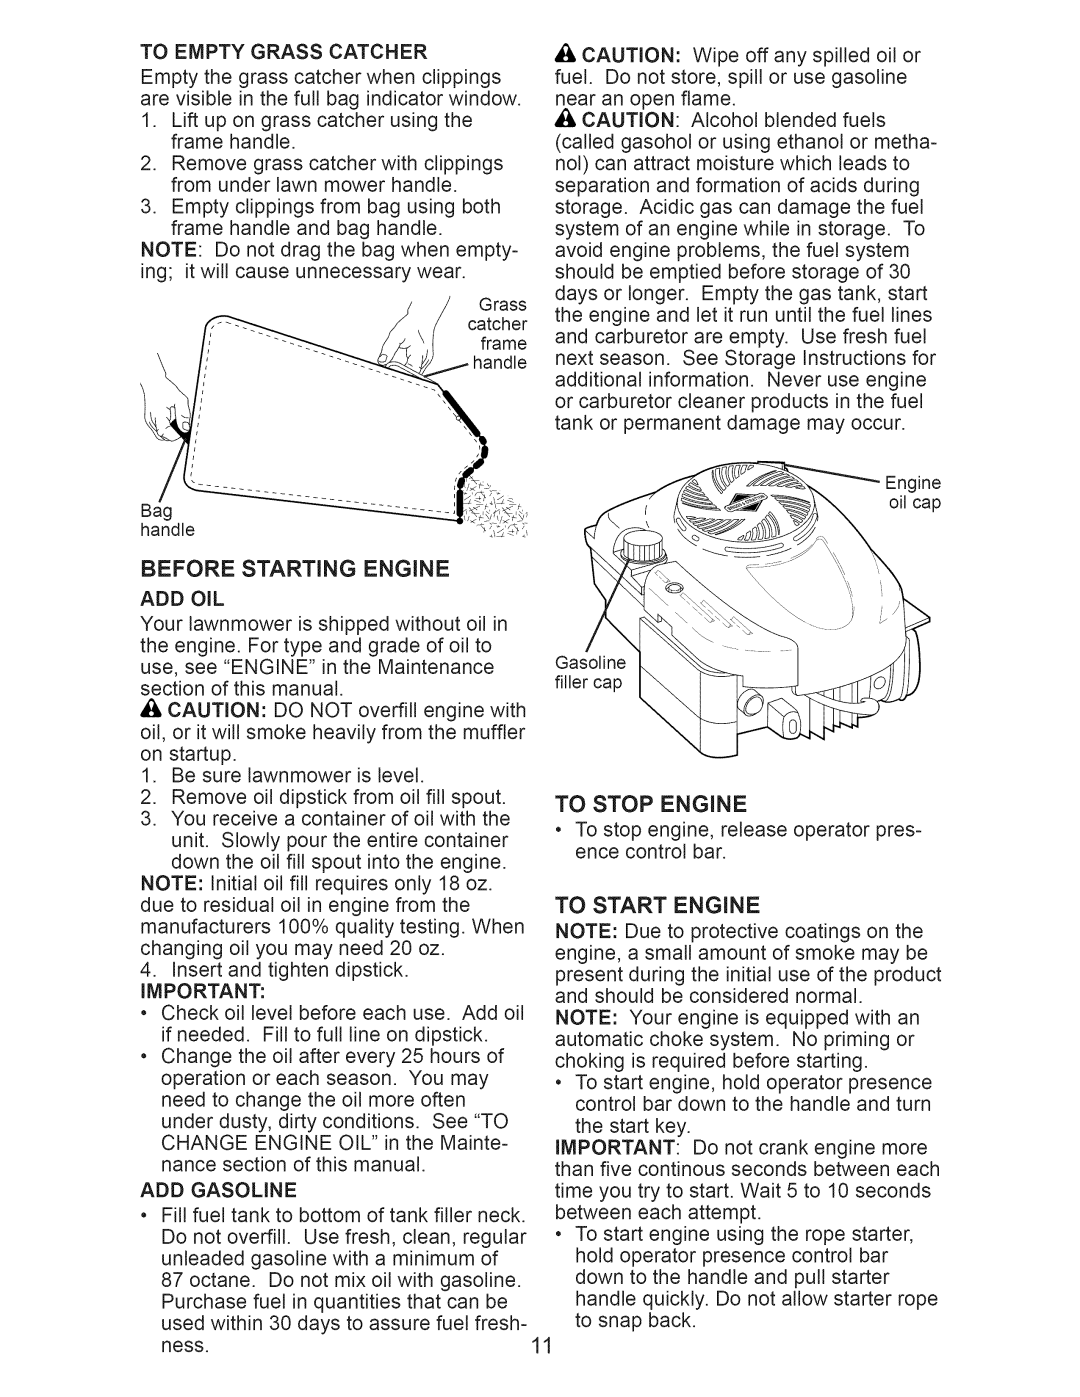 Craftsman 917.374364 manual Before Starting Engine 